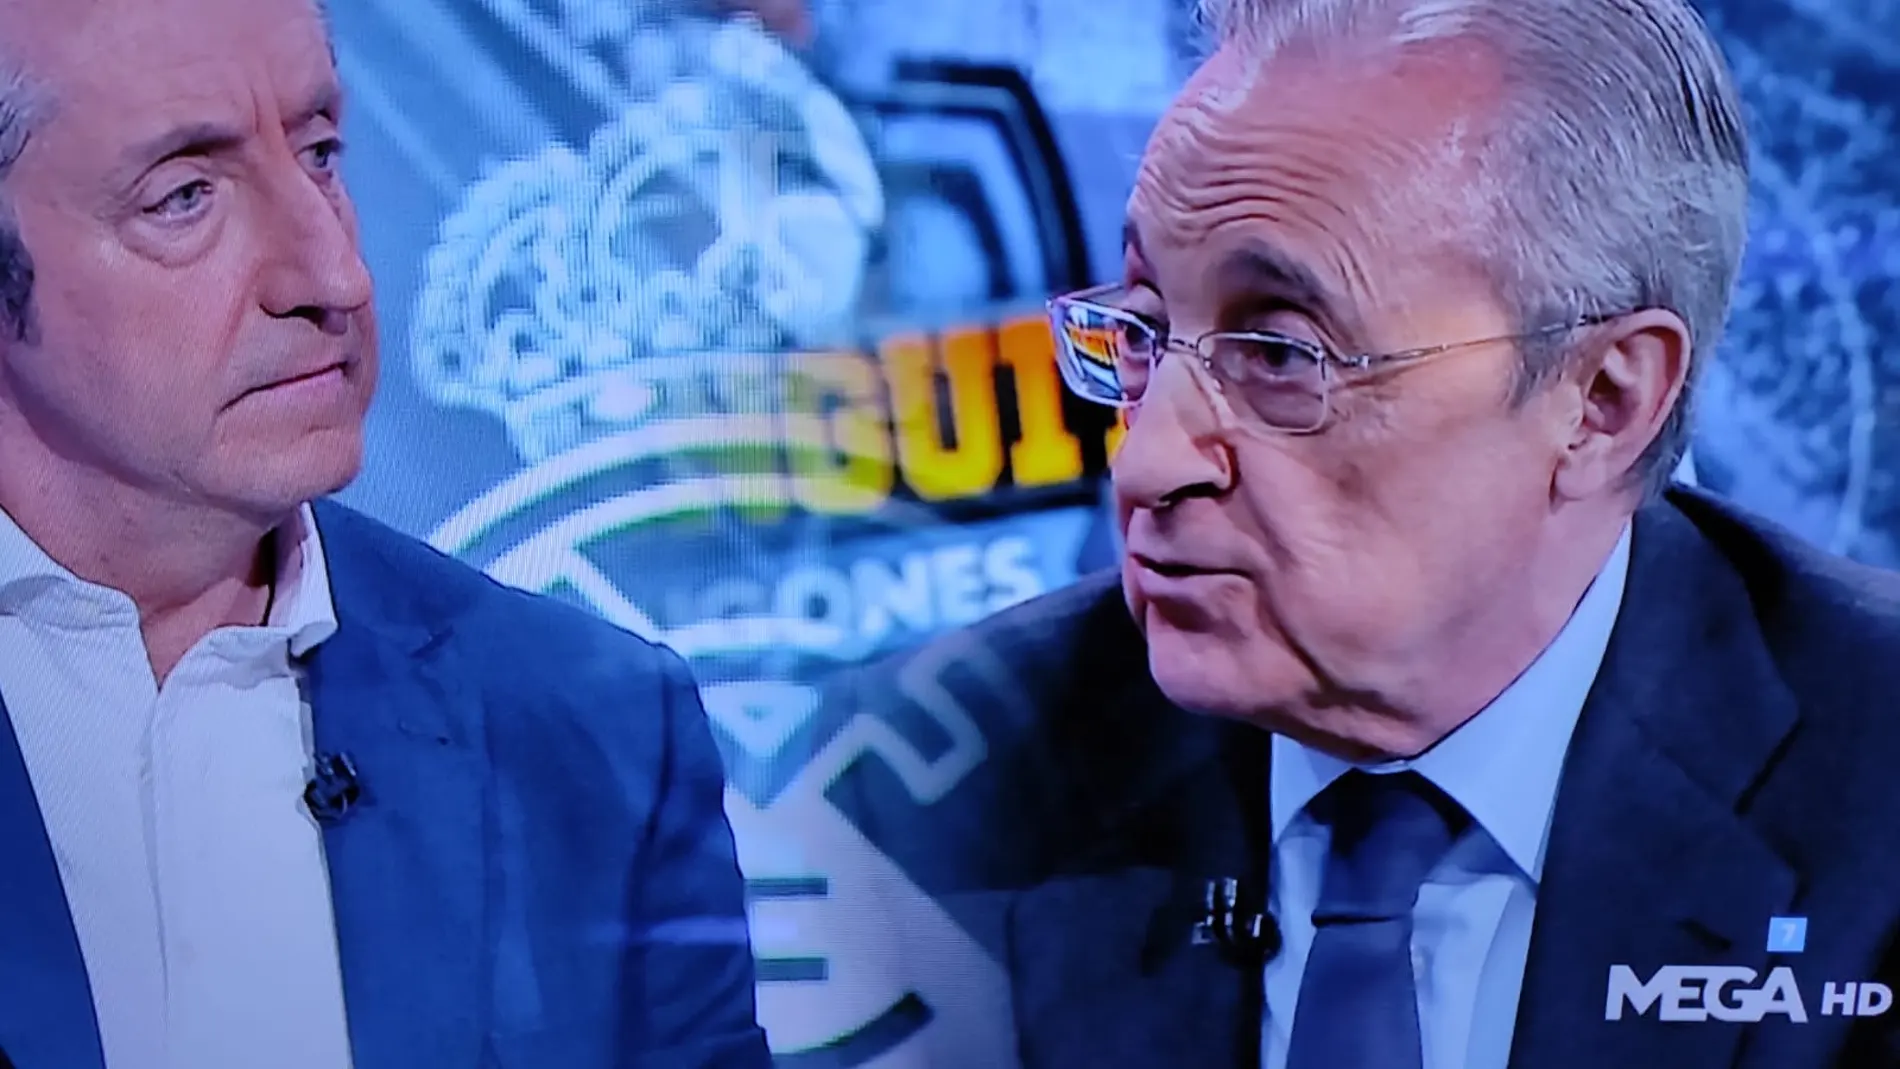 El presidente del Real Madrid, Florentino Pérez, acude a l programa de televisión de la cadena MEGA "El chiringuito de Jugones " para ser entrevistado por Josep Pedrerol